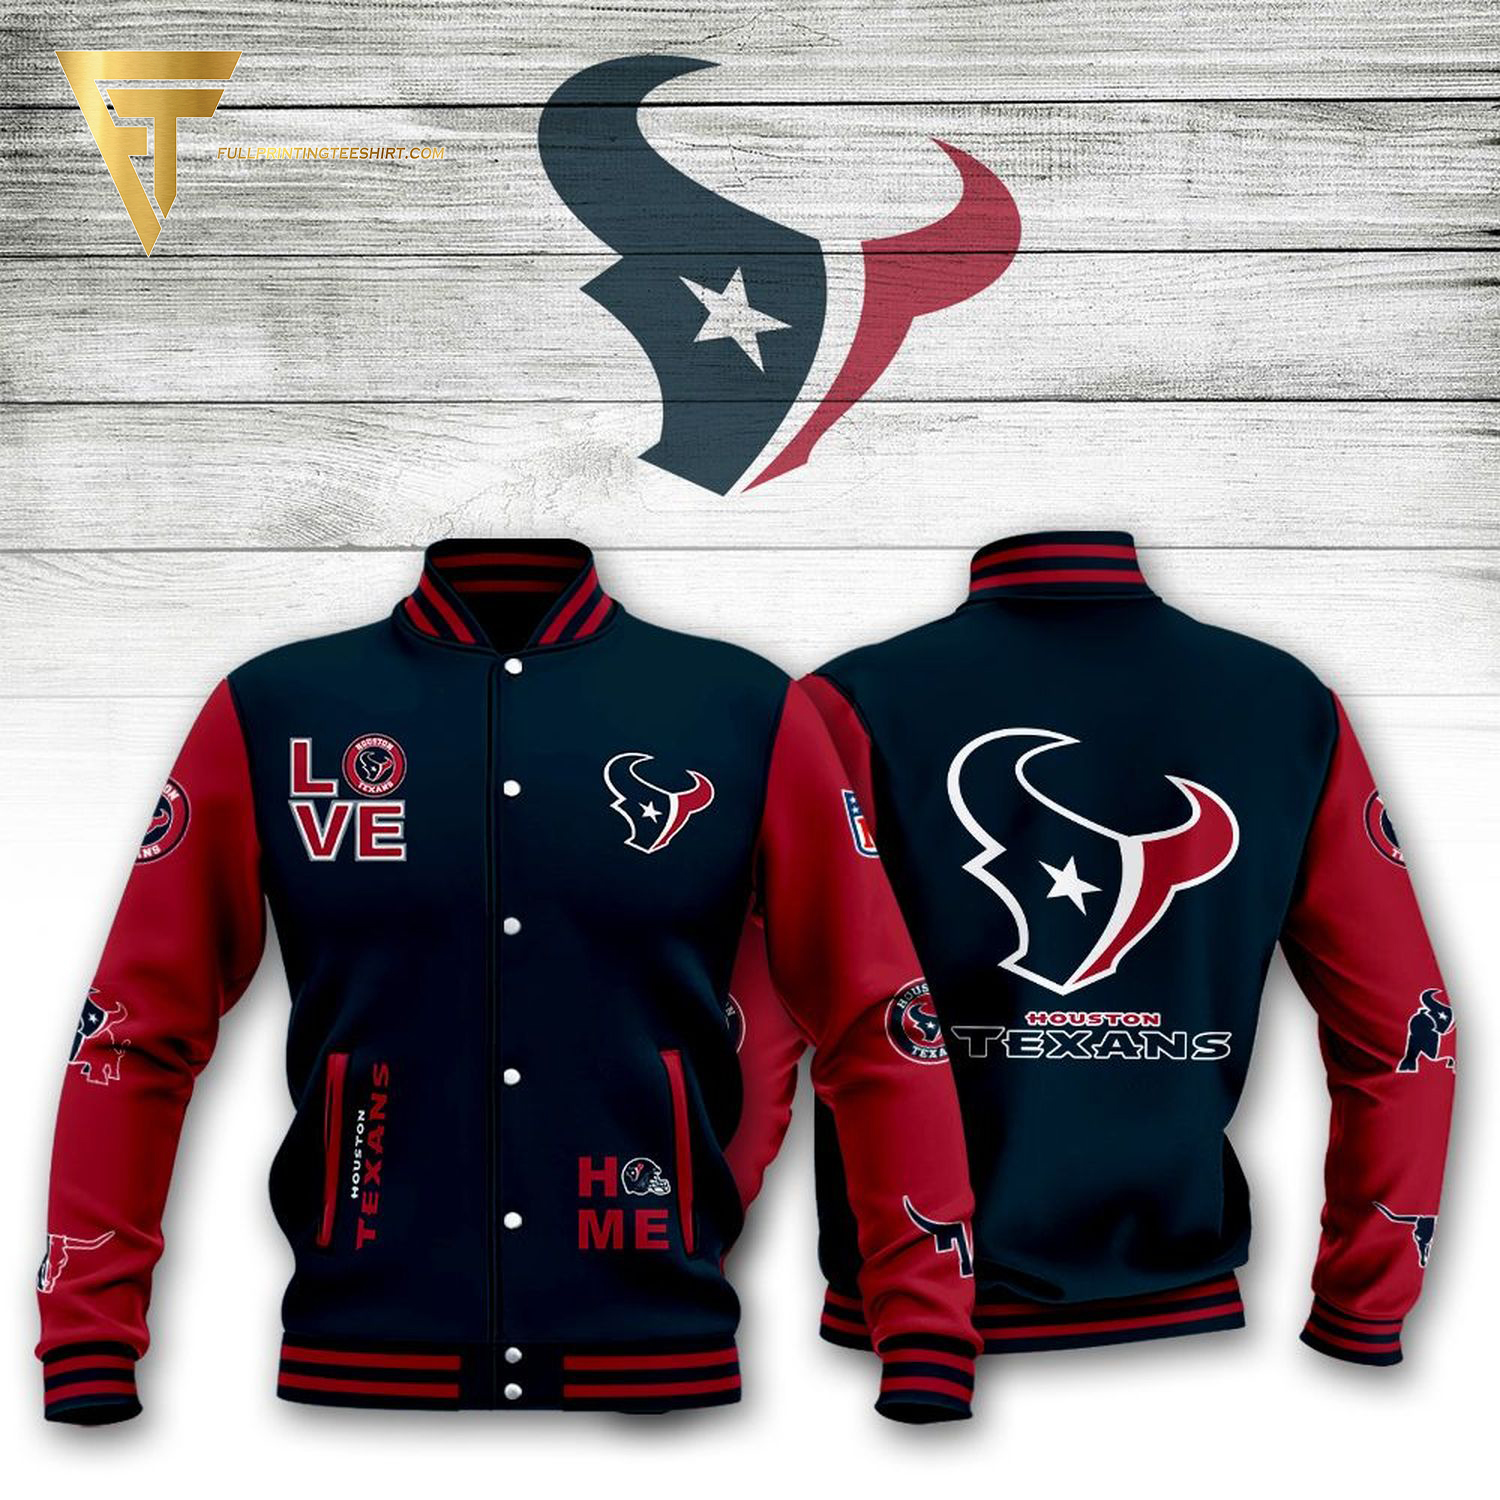 NFL Houston Texans Full Print Baseball Jacket